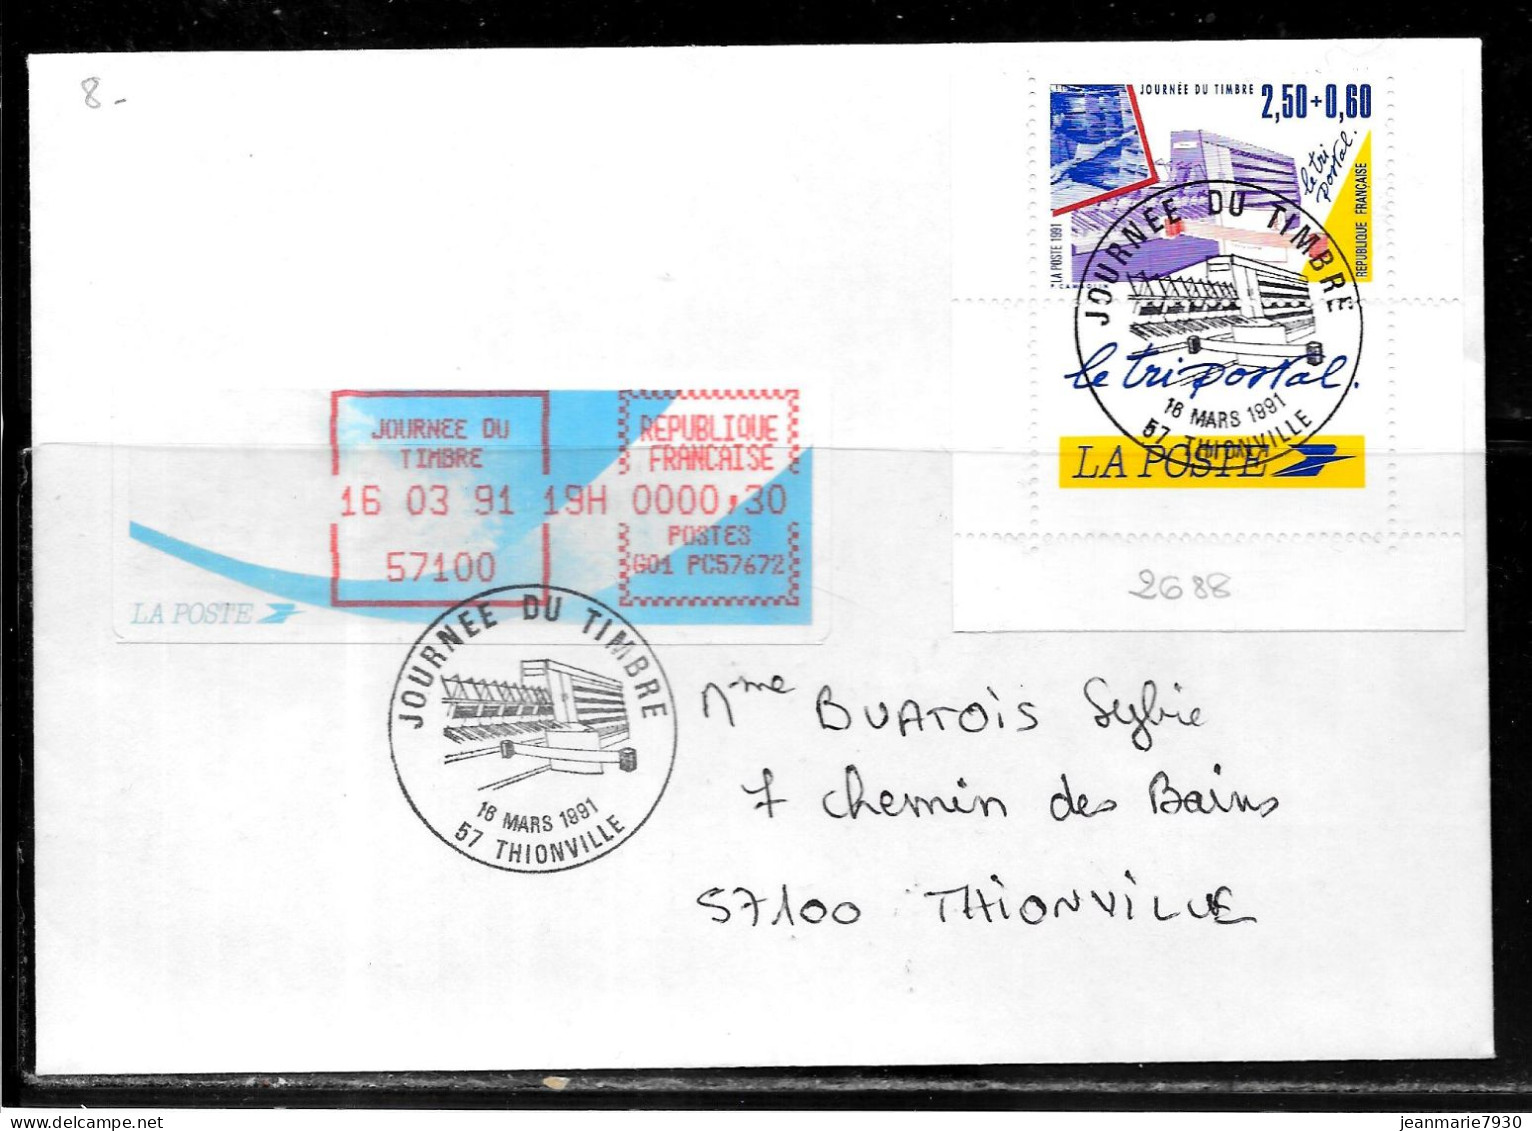 K183 - N° 2688 SUR LETTRE DE THIONVILLE DU 16/03/91 - JOURNEE DU TIMBRE - VIGNETTE D'AFFRANCHISSEMENT - Bolli Commemorativi